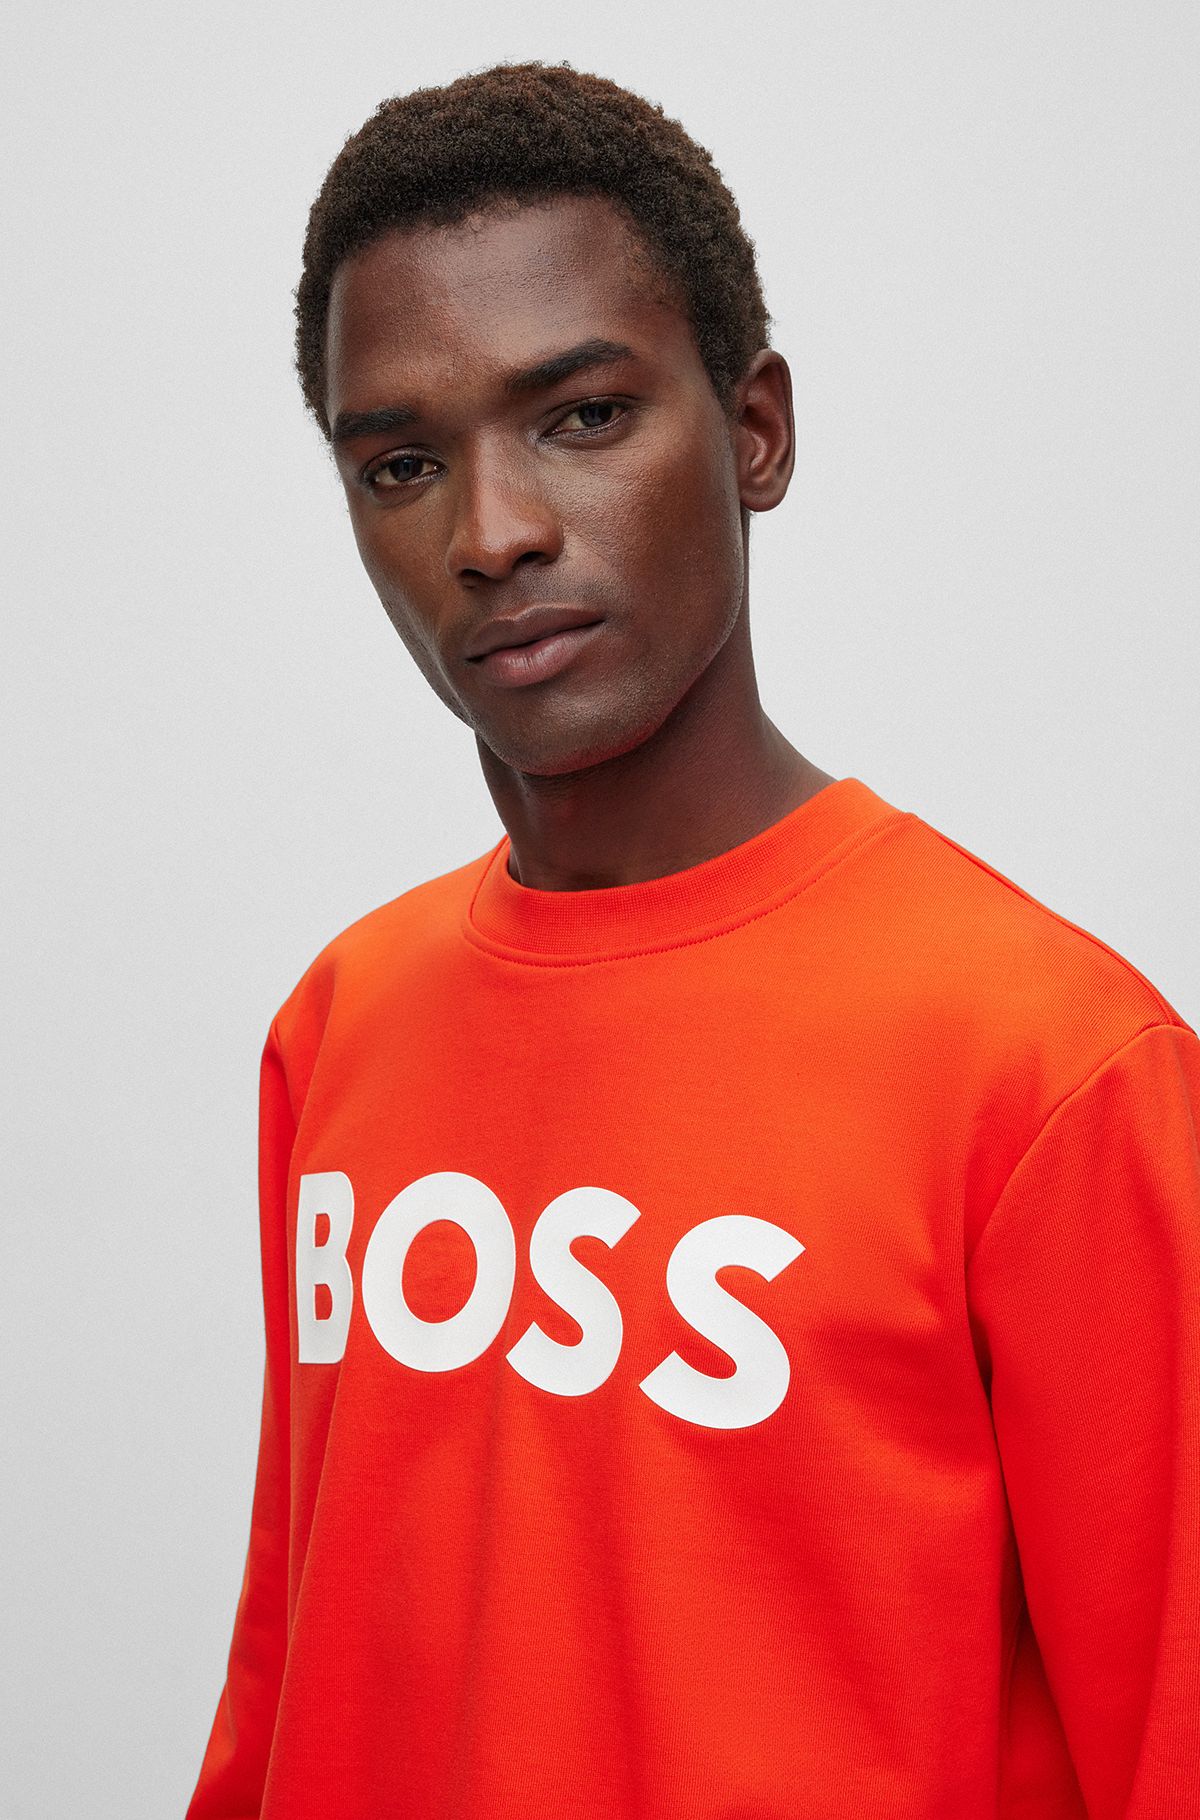 Sweatshirts in Orange by HUGO BOSS | Men